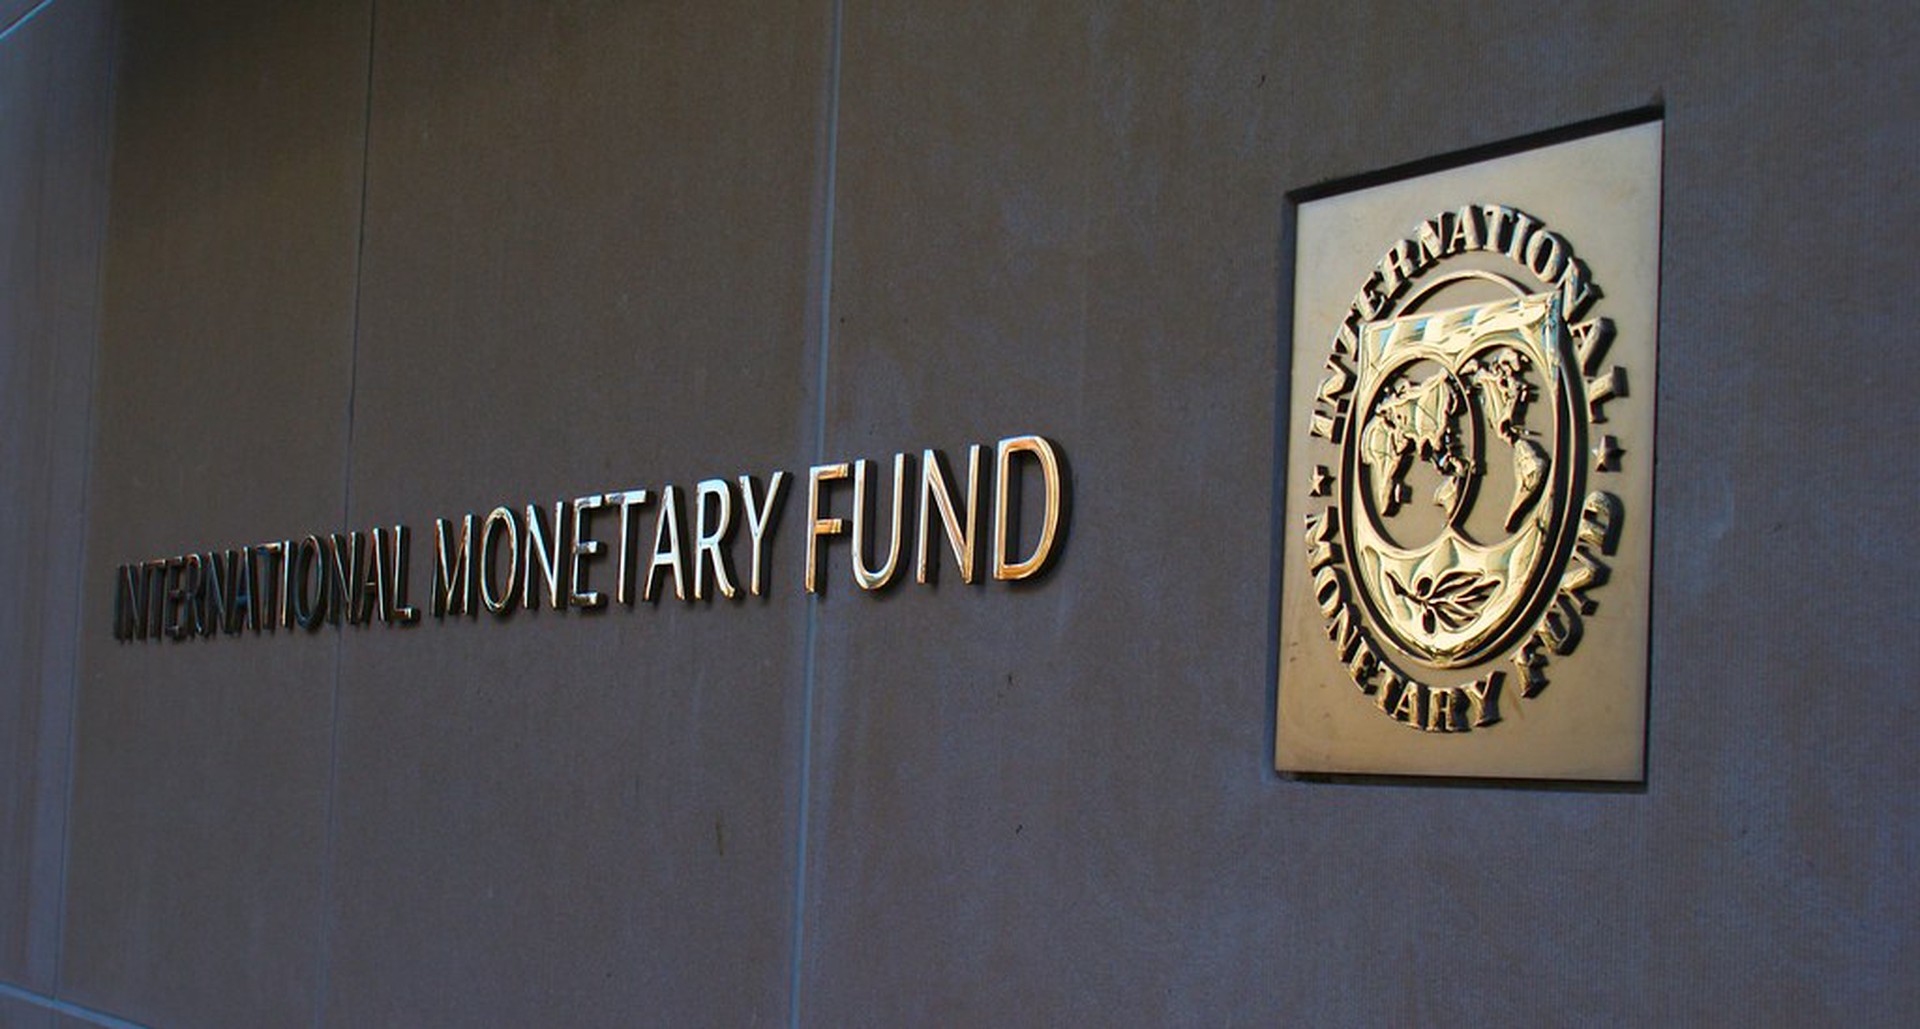 Глава МВФ призвала признать несправедливое распределение благ между народами